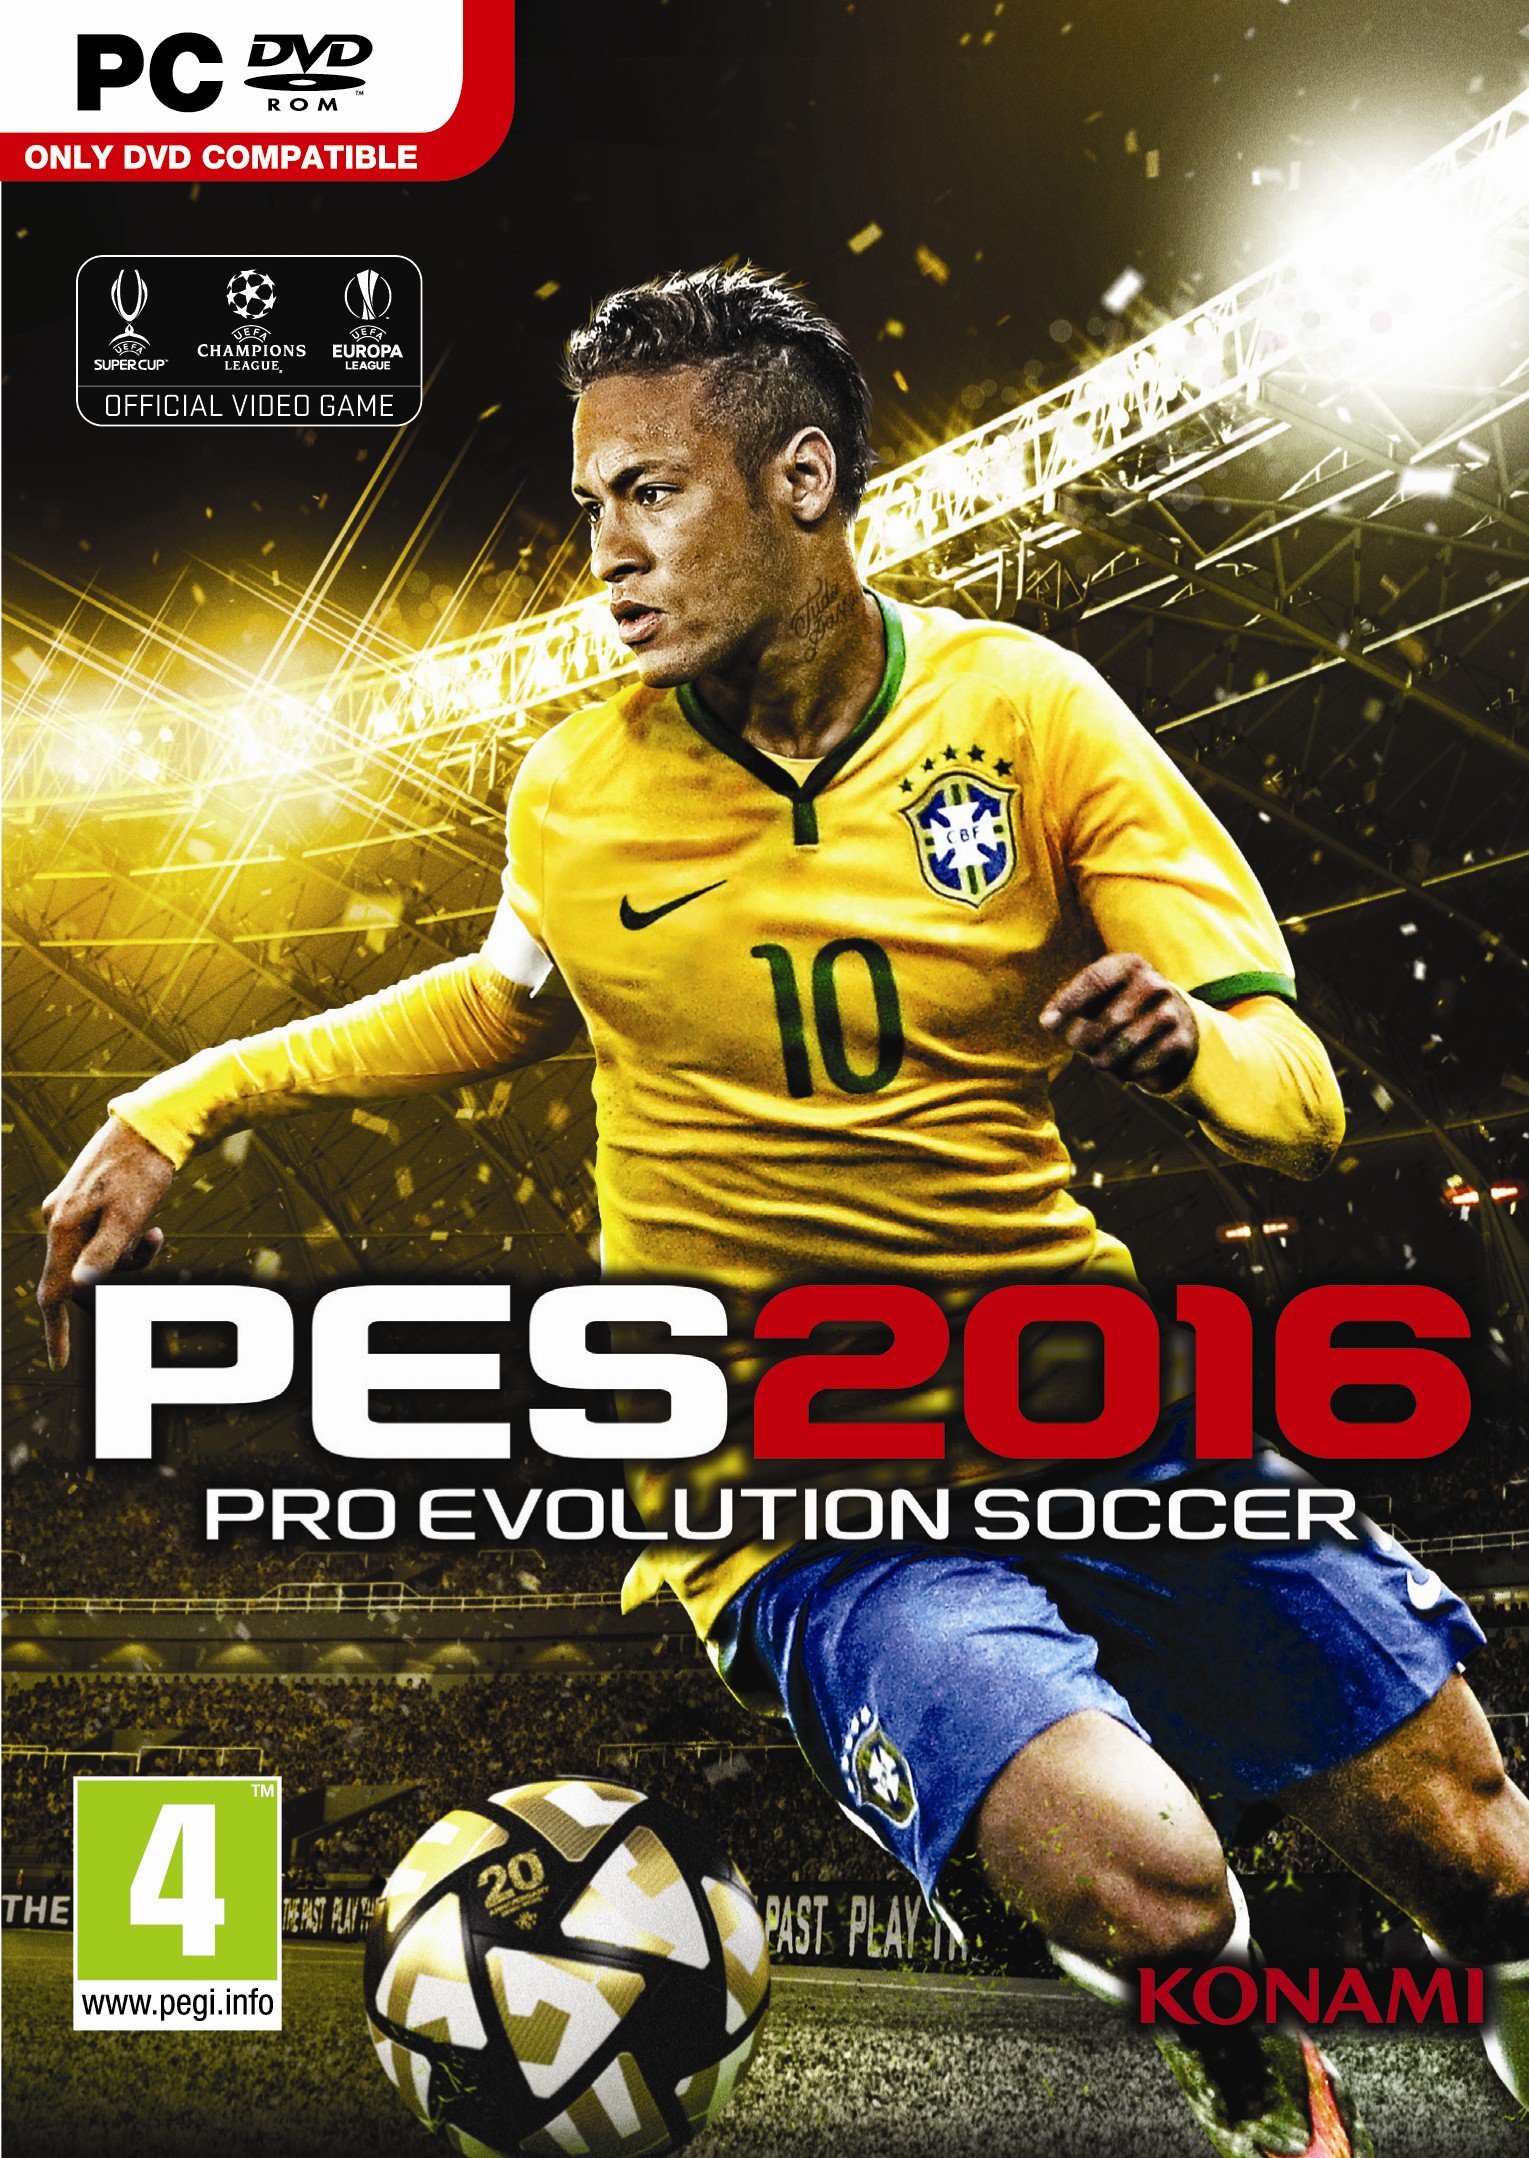 Image of Pro Evolution Soccer 2016